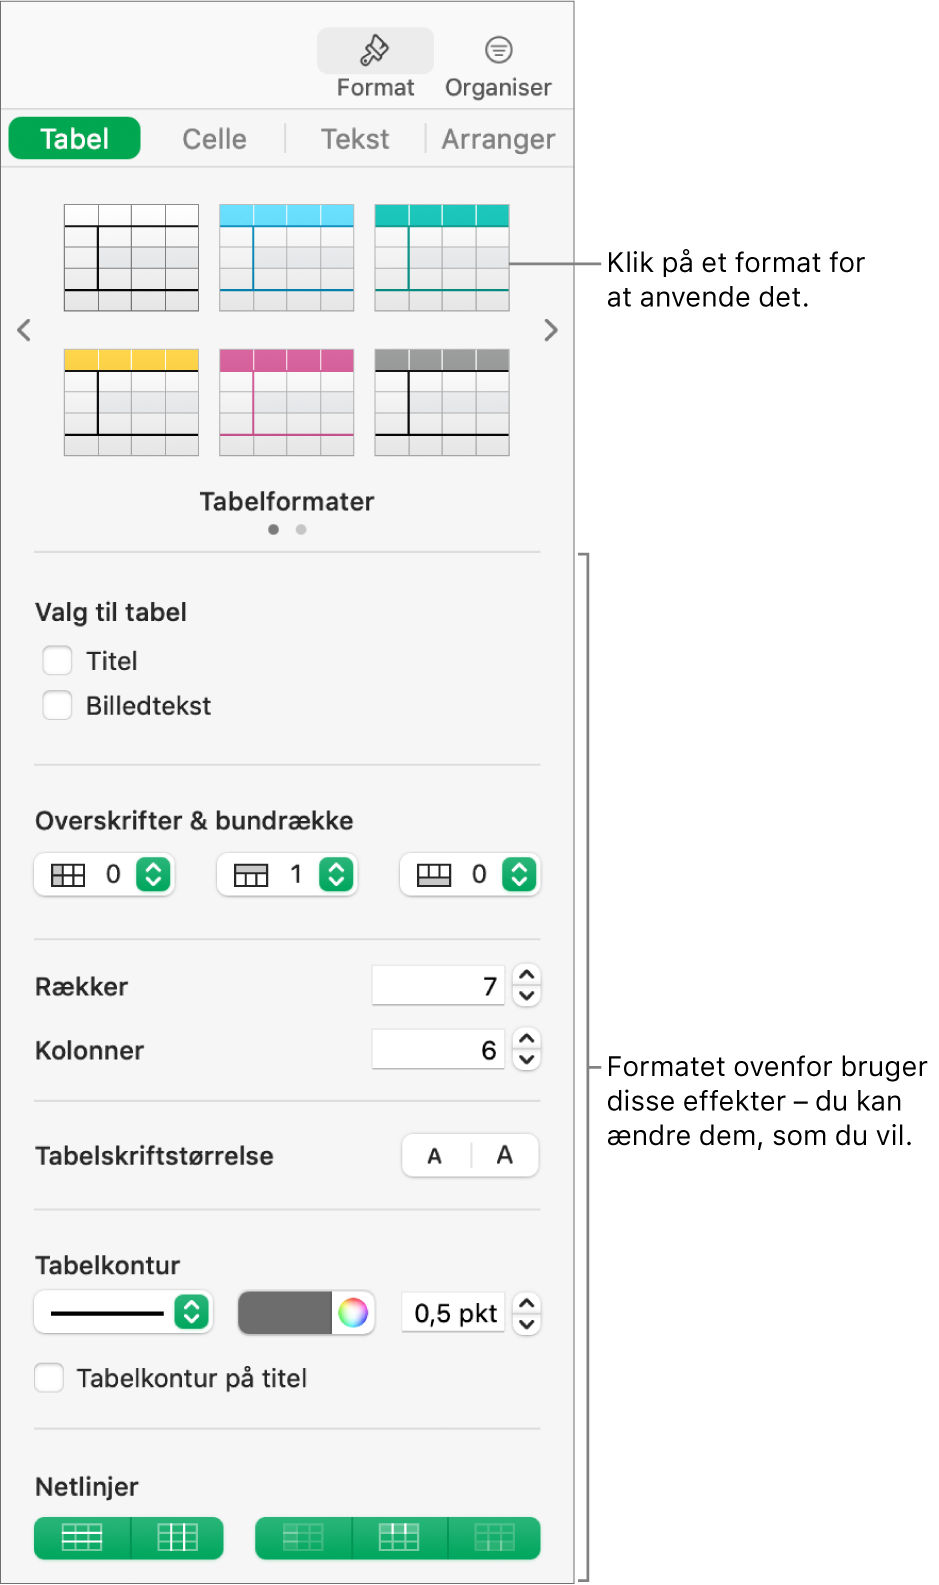 Indholdsoversigten Format, der viser tabelformater og formateringsmuligheder.